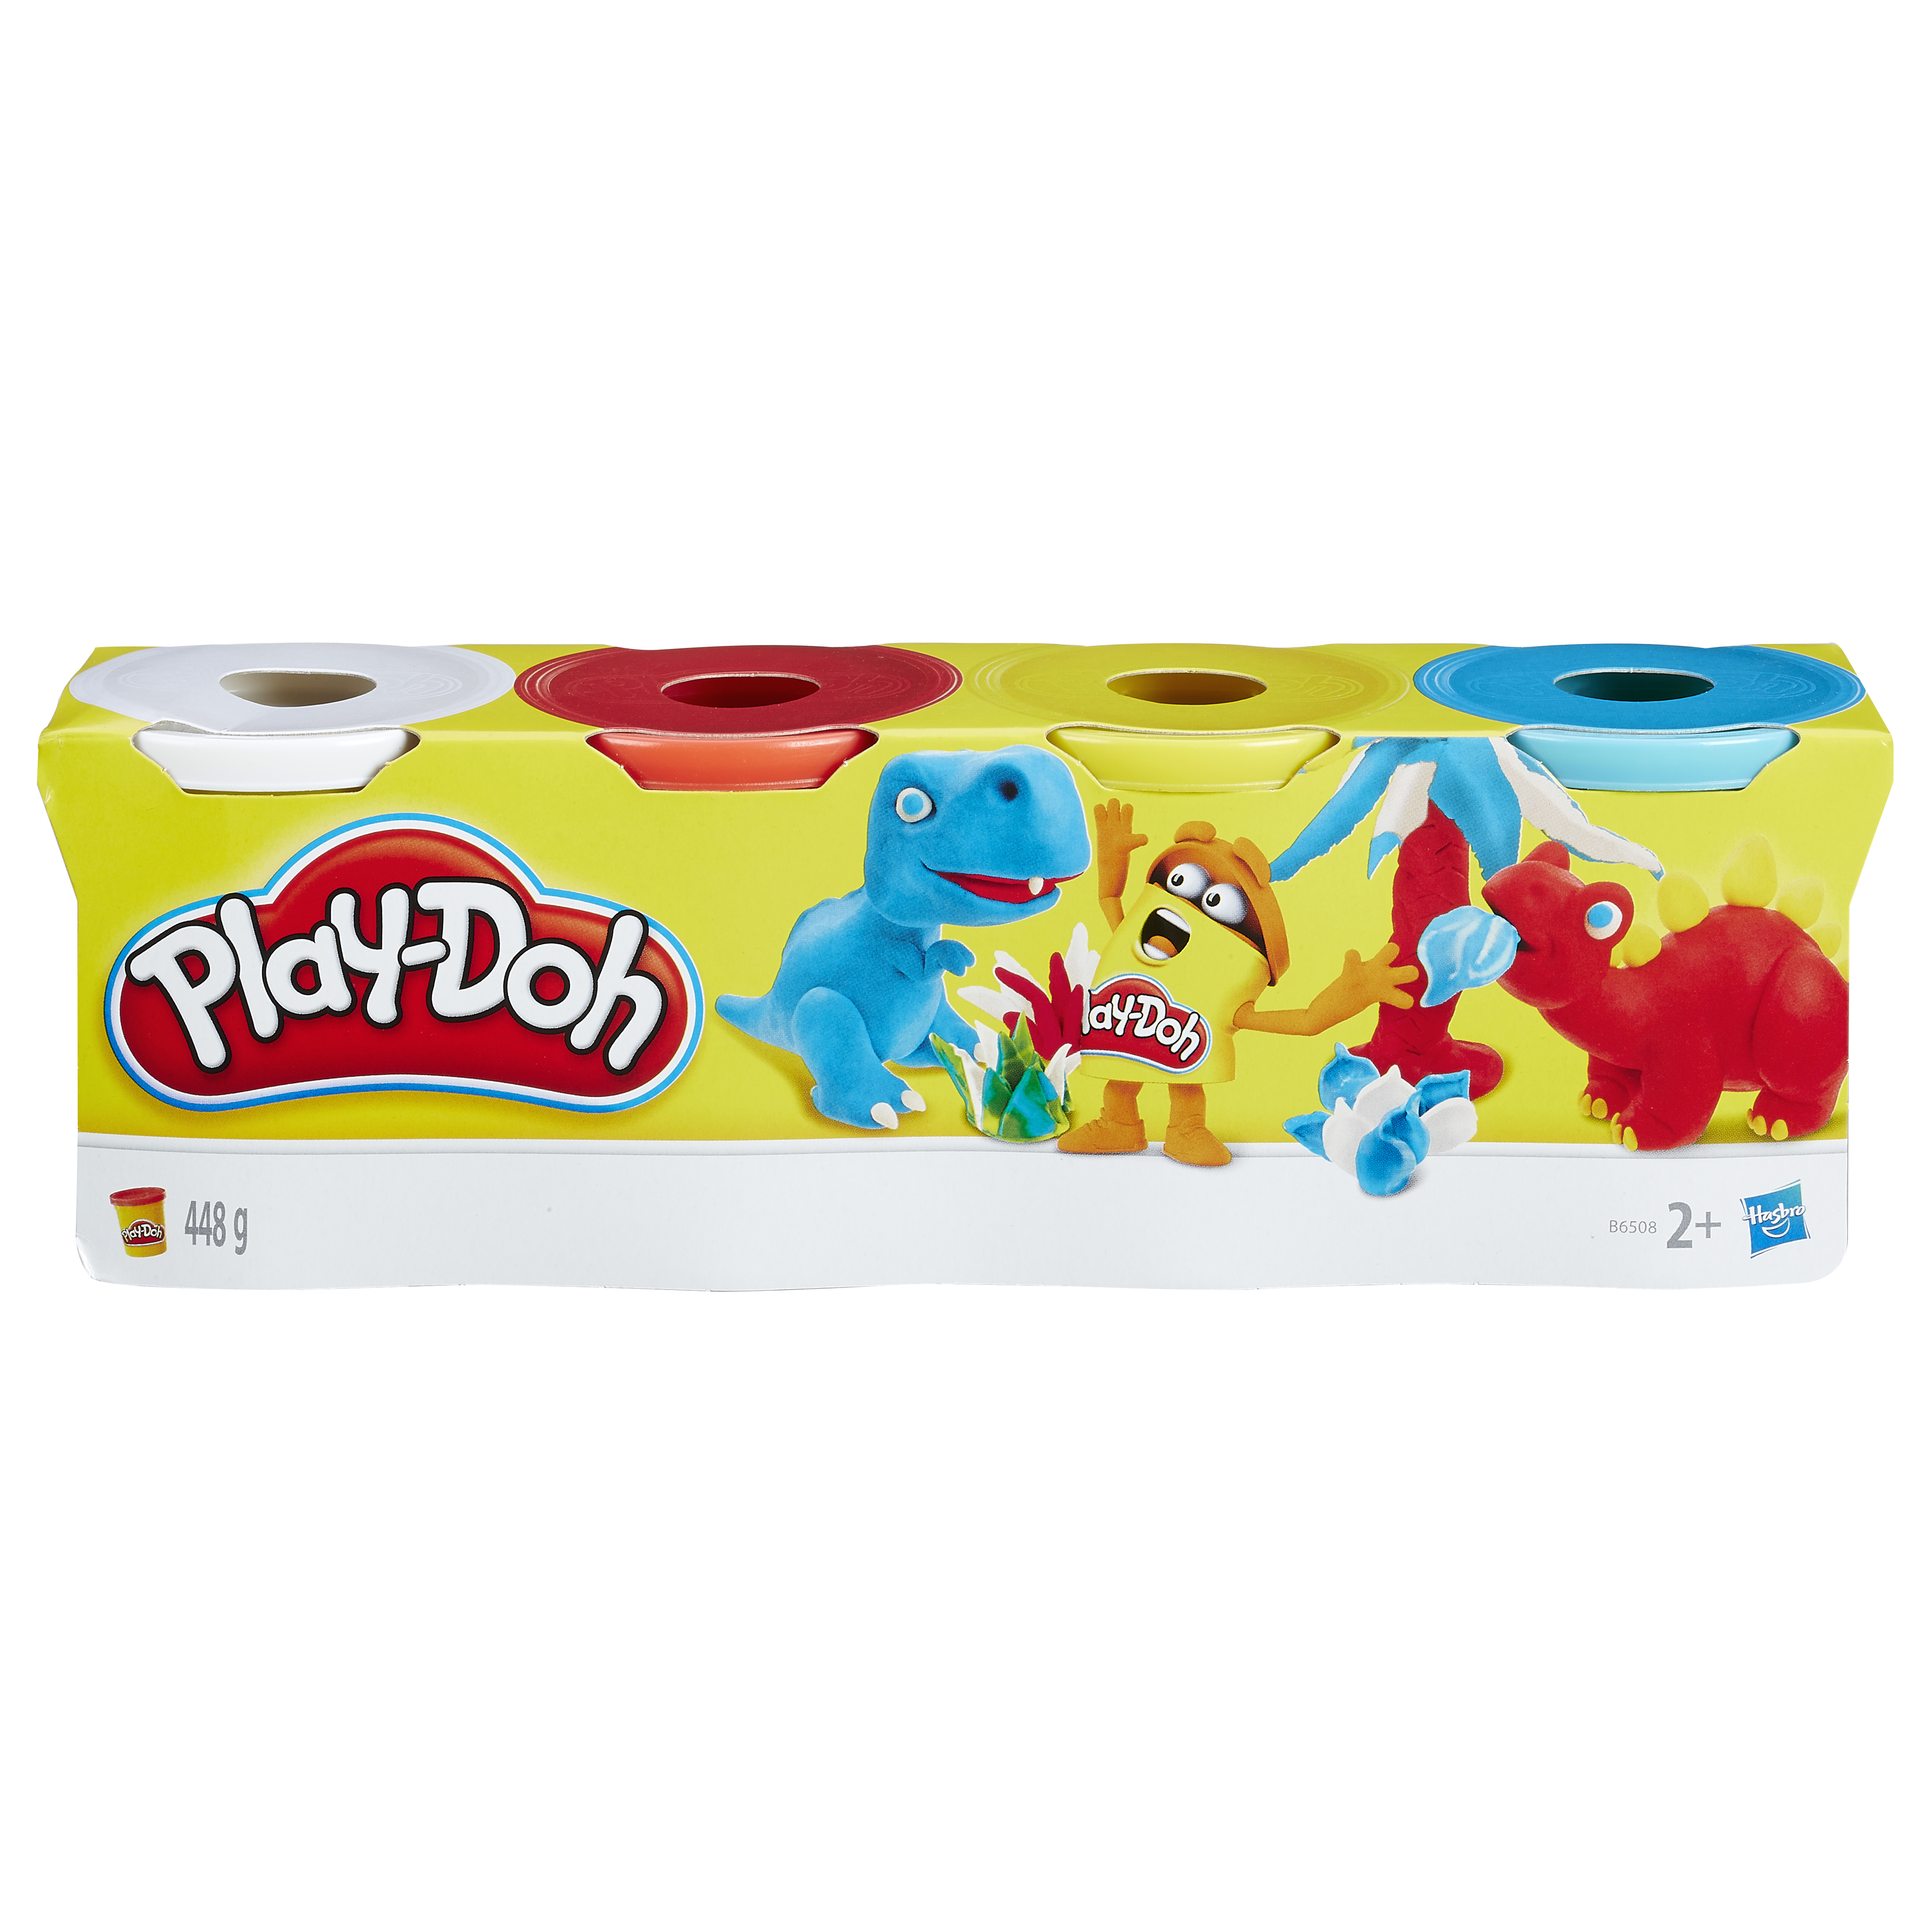 Игровой набор Play-Doh из 4 баночек в ассортименте (обновлённый)